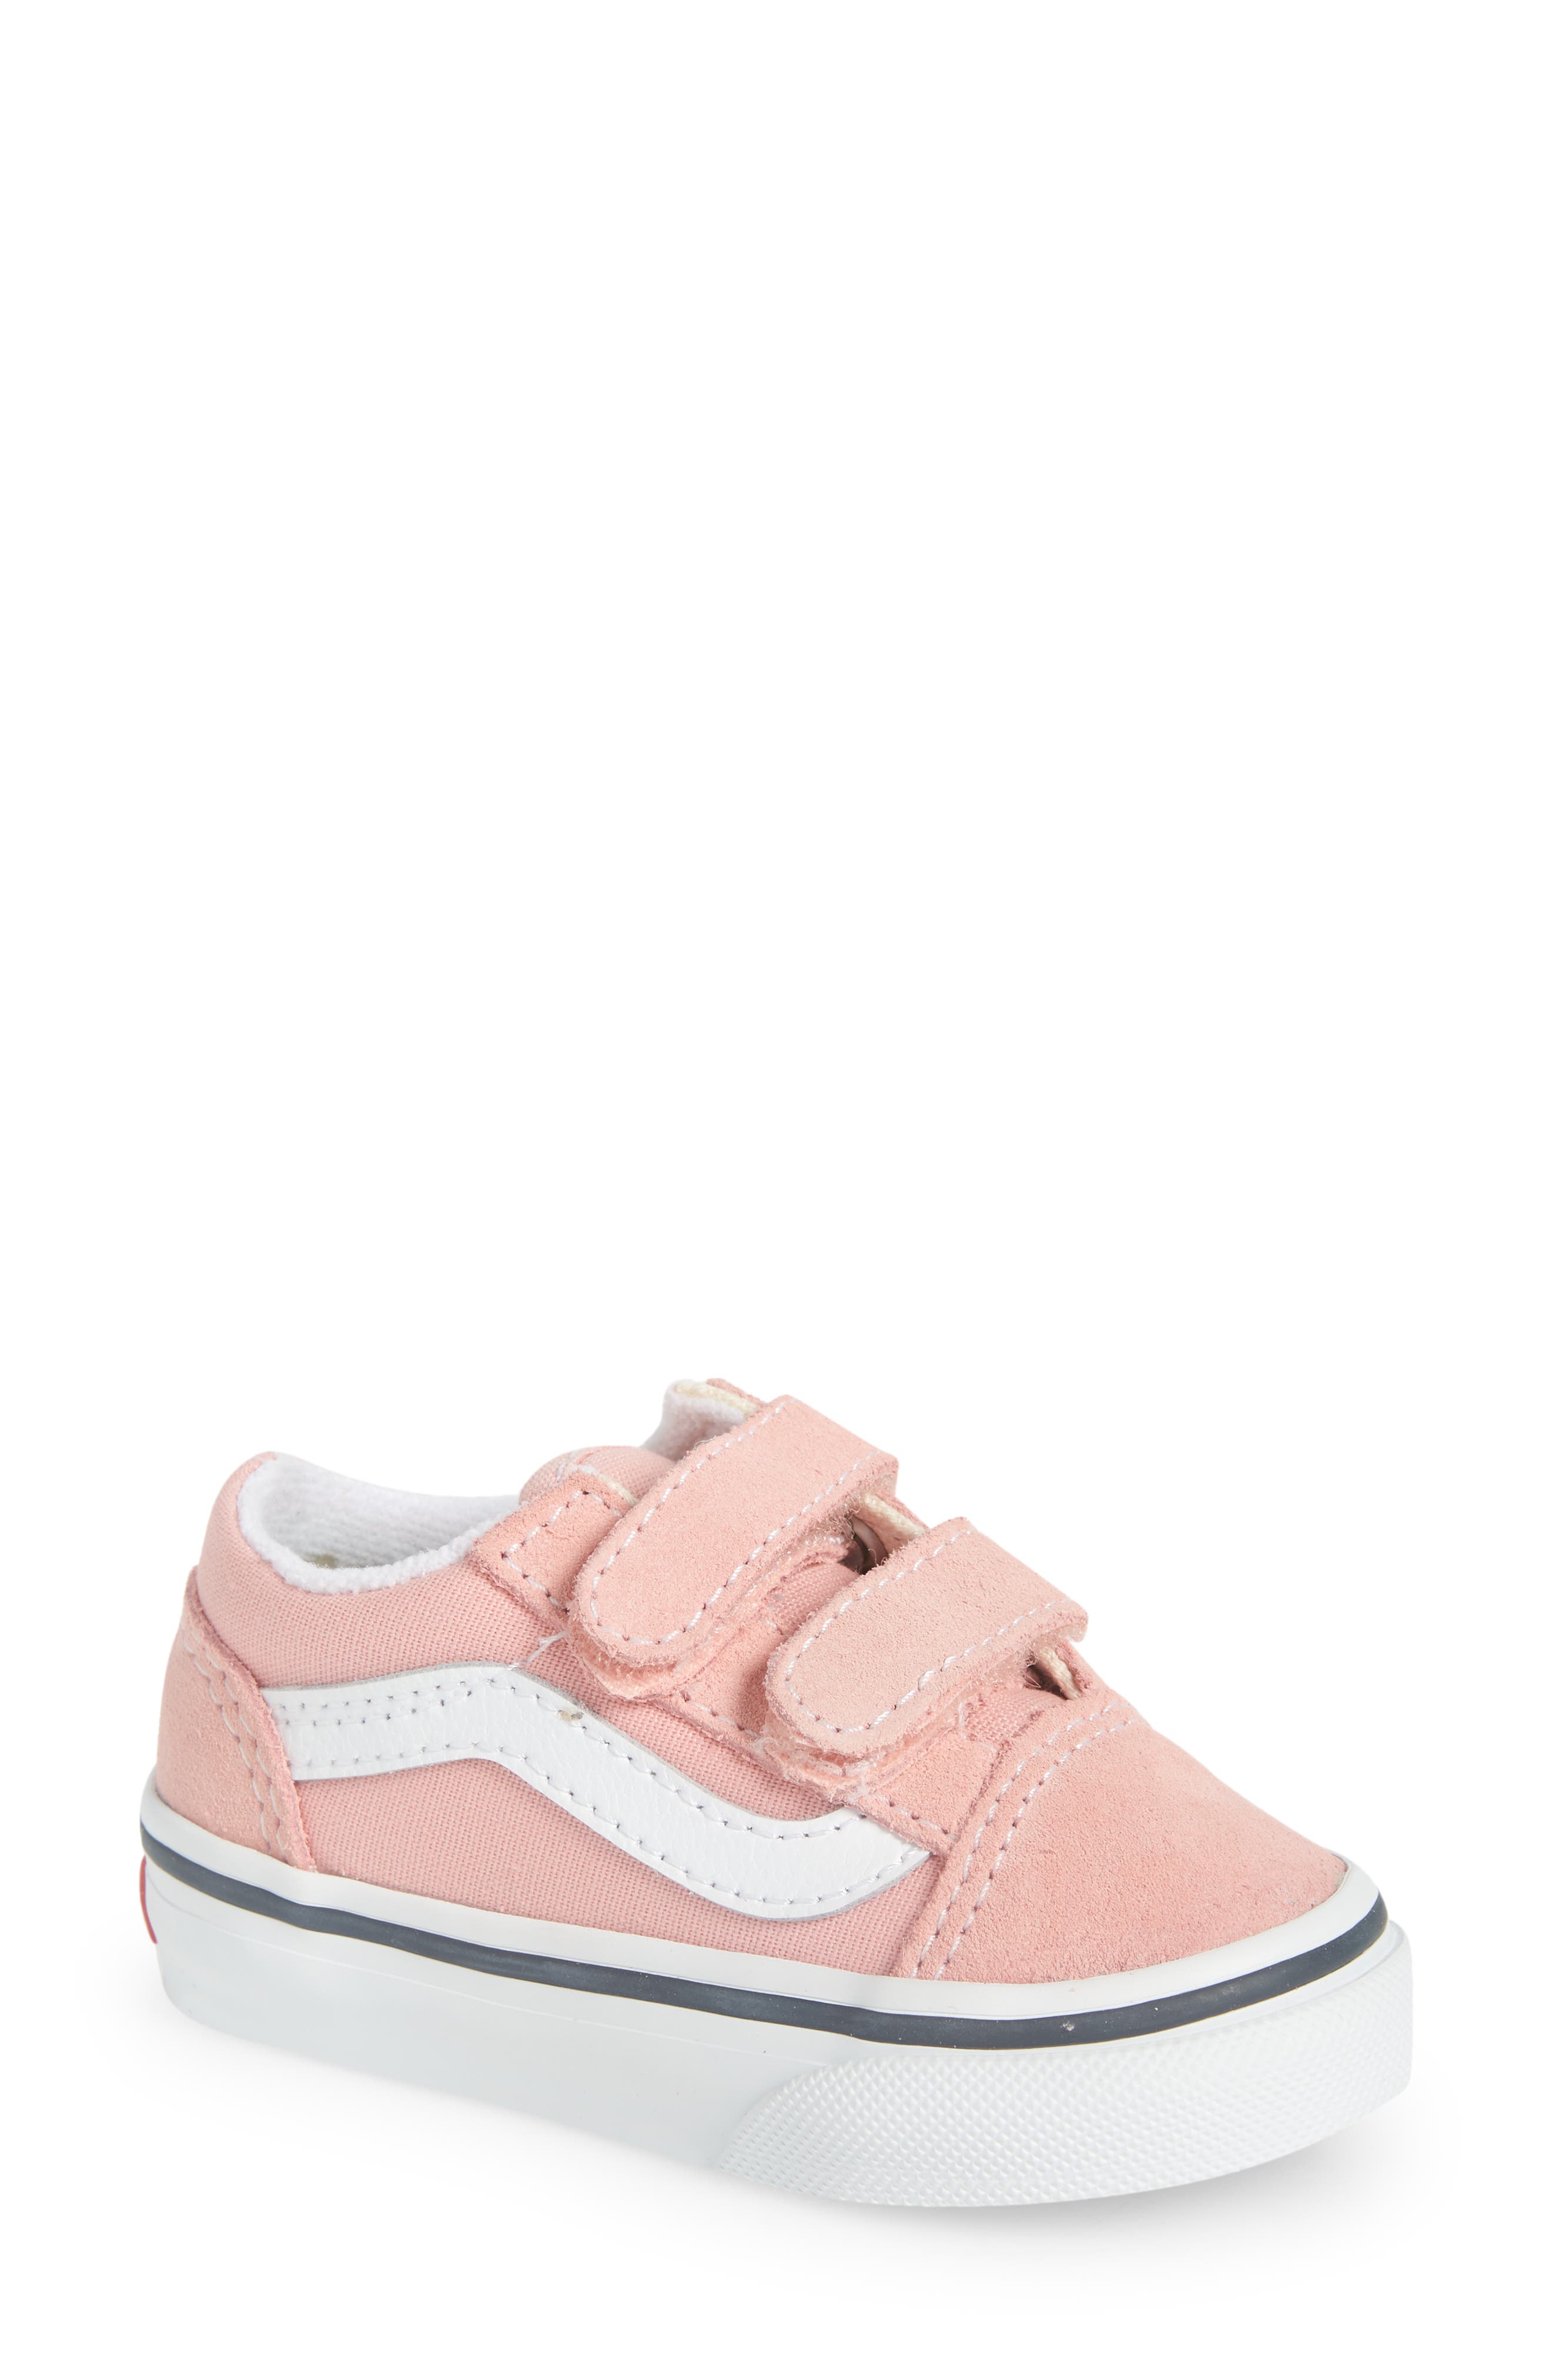 vans toddler shoes girl